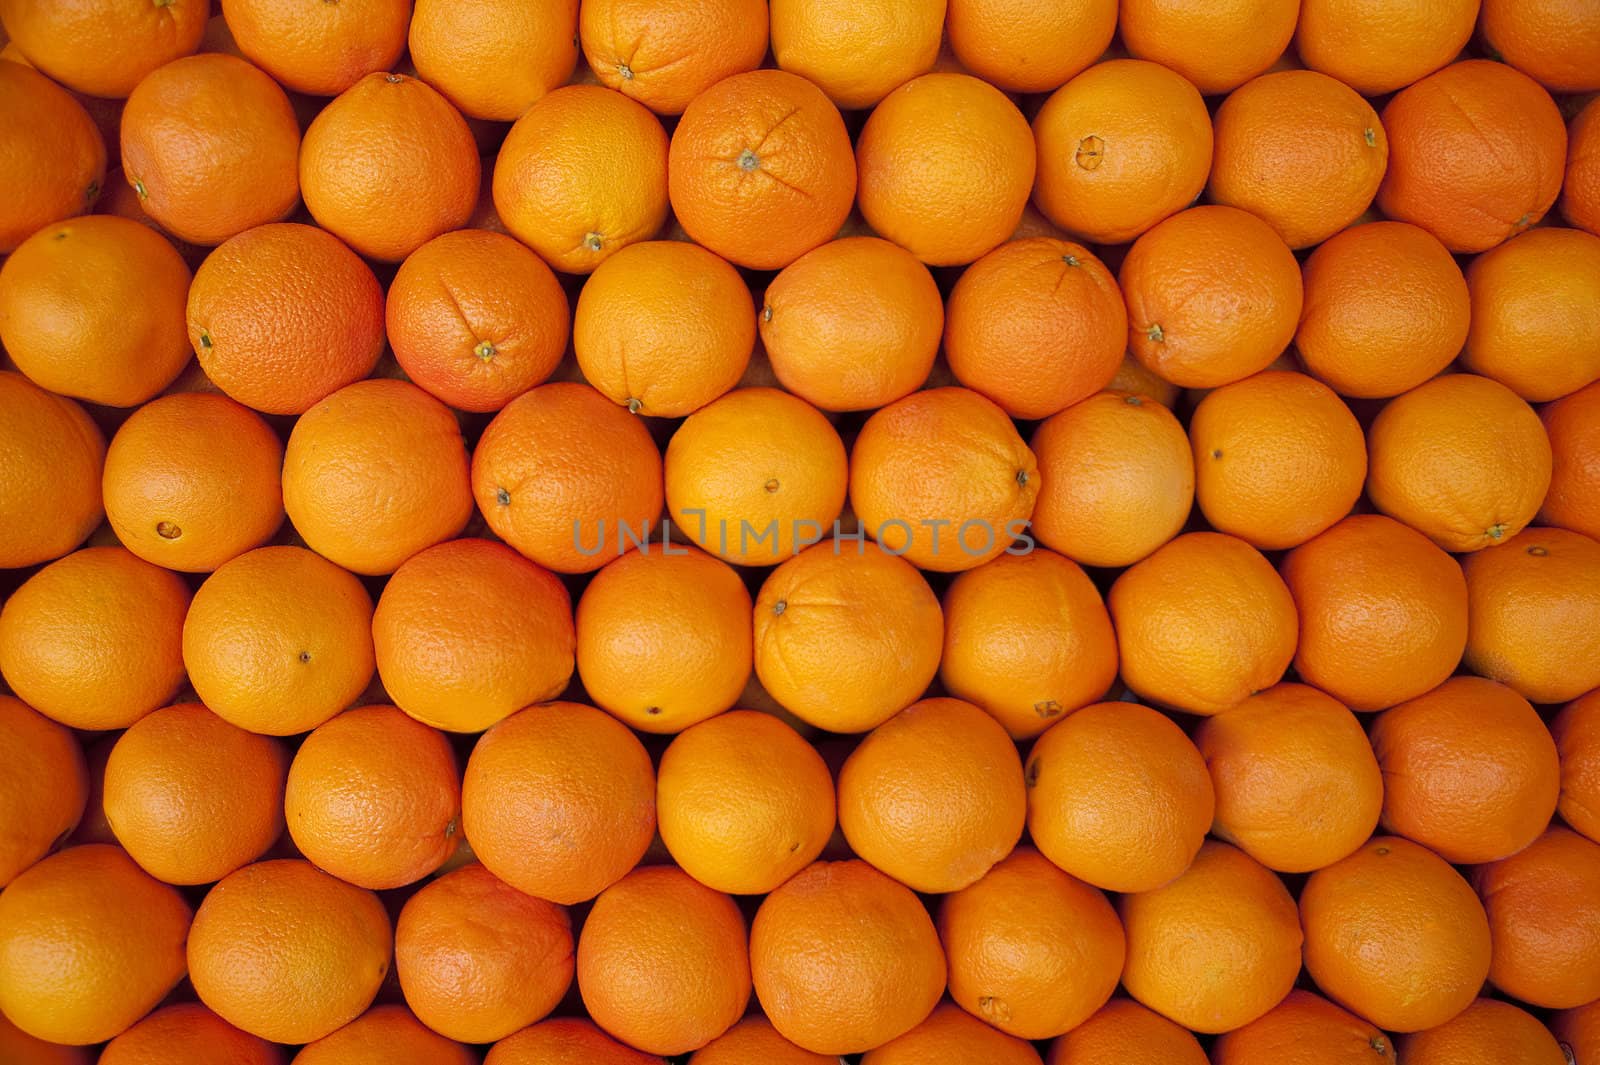 Orange citrus fruit background